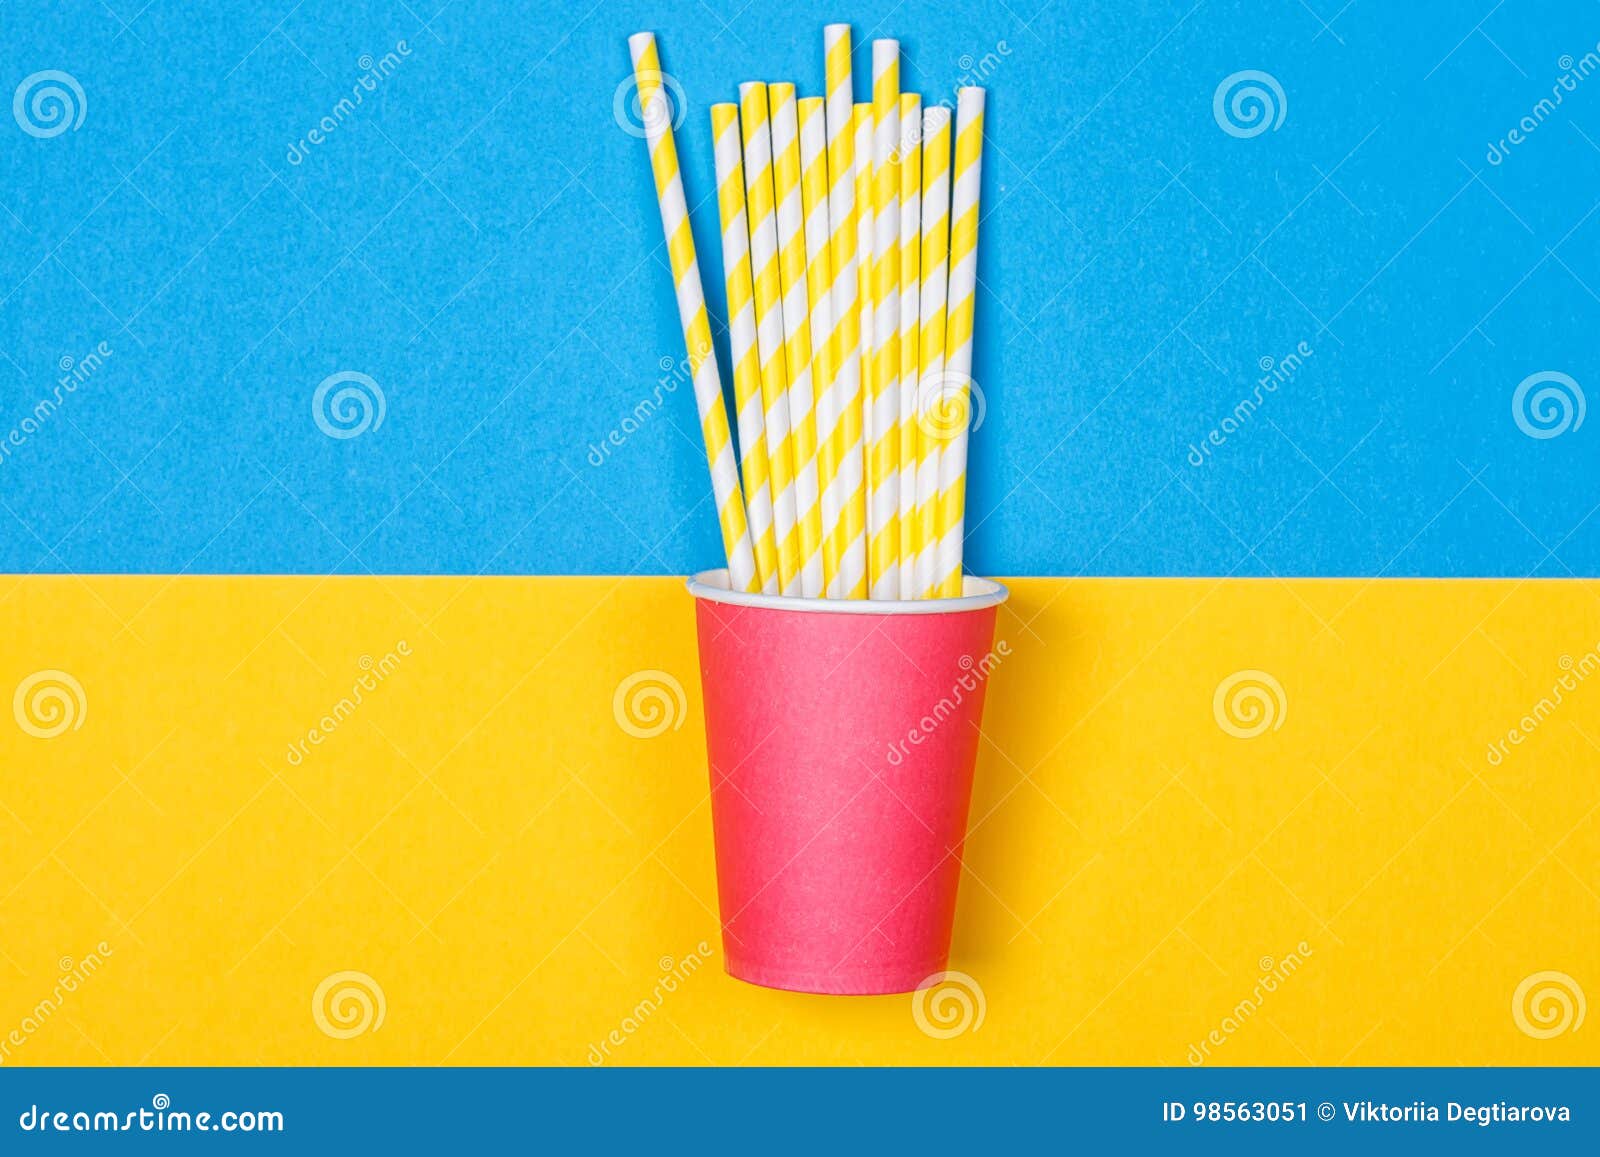 Un paquete de pajas de beber multicoloras en una taza de papel en un fondo amarillo y azul Moda mínima Endecha plana